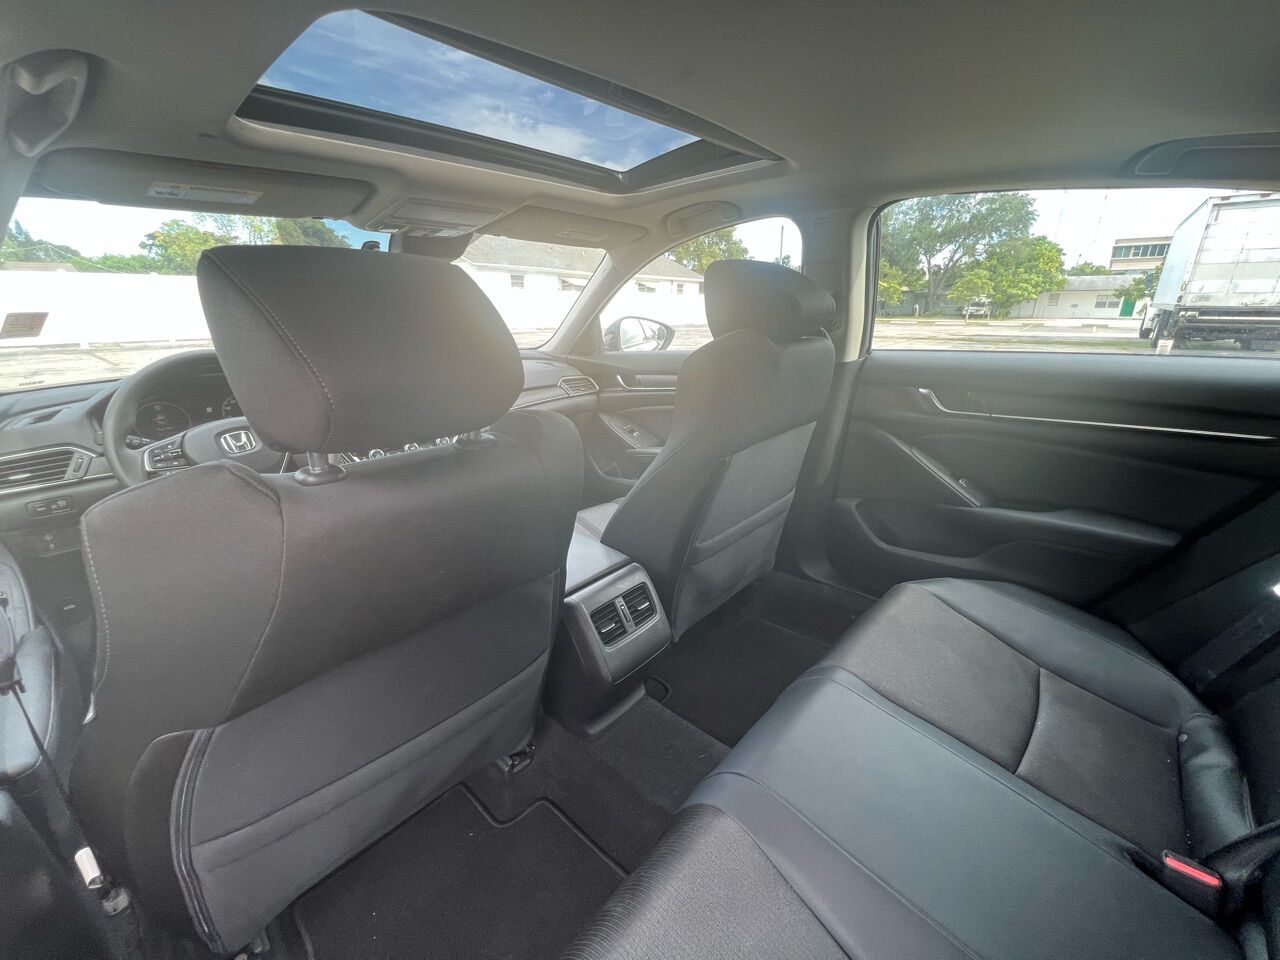 2018 HONDA Accord Sedan - $19,998